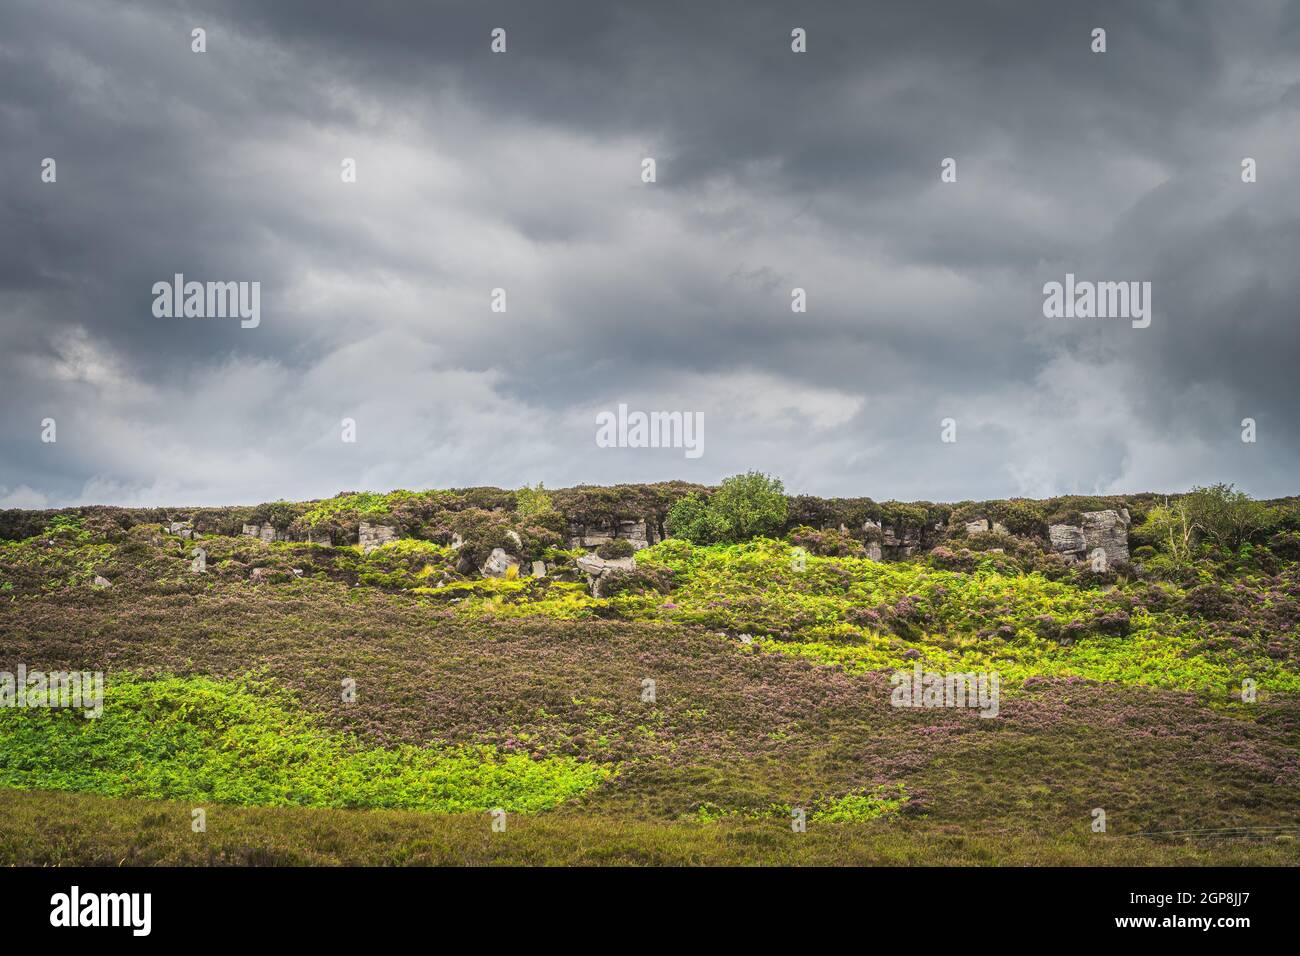 Verde pradera o peatbog con helechos y brezo en la colina rocosa en Cuilcagh Mountain Park, tormentoso, espectacular cielo en el fondo, Irlanda del Norte Foto de stock